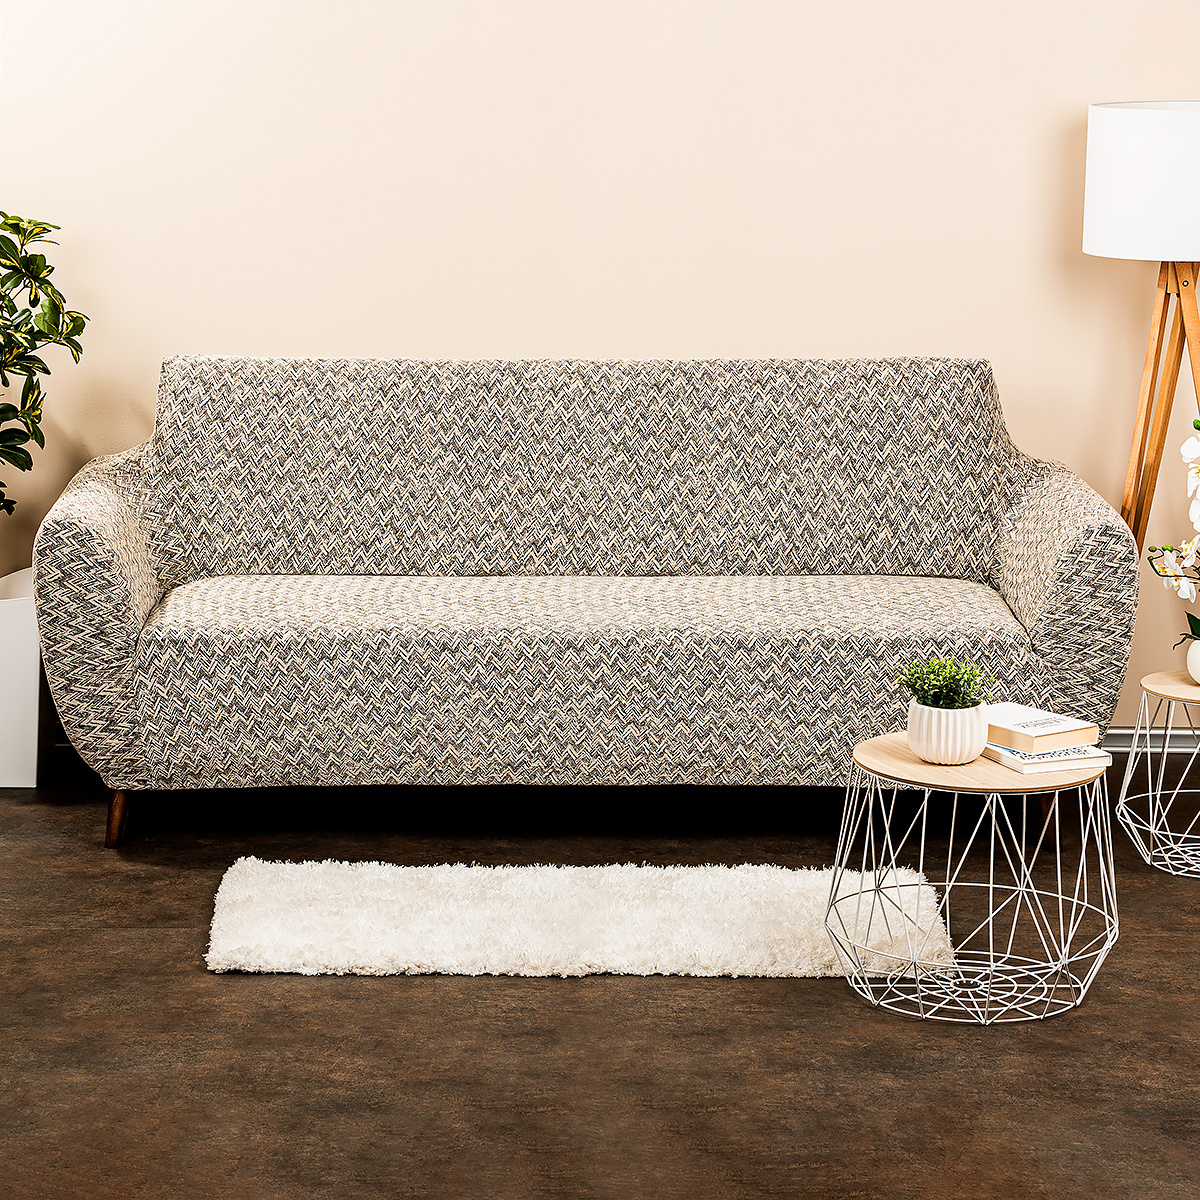 Husa multielastica 4Home Comfort Plus pentru canapea, bej, 180 - 220 cm